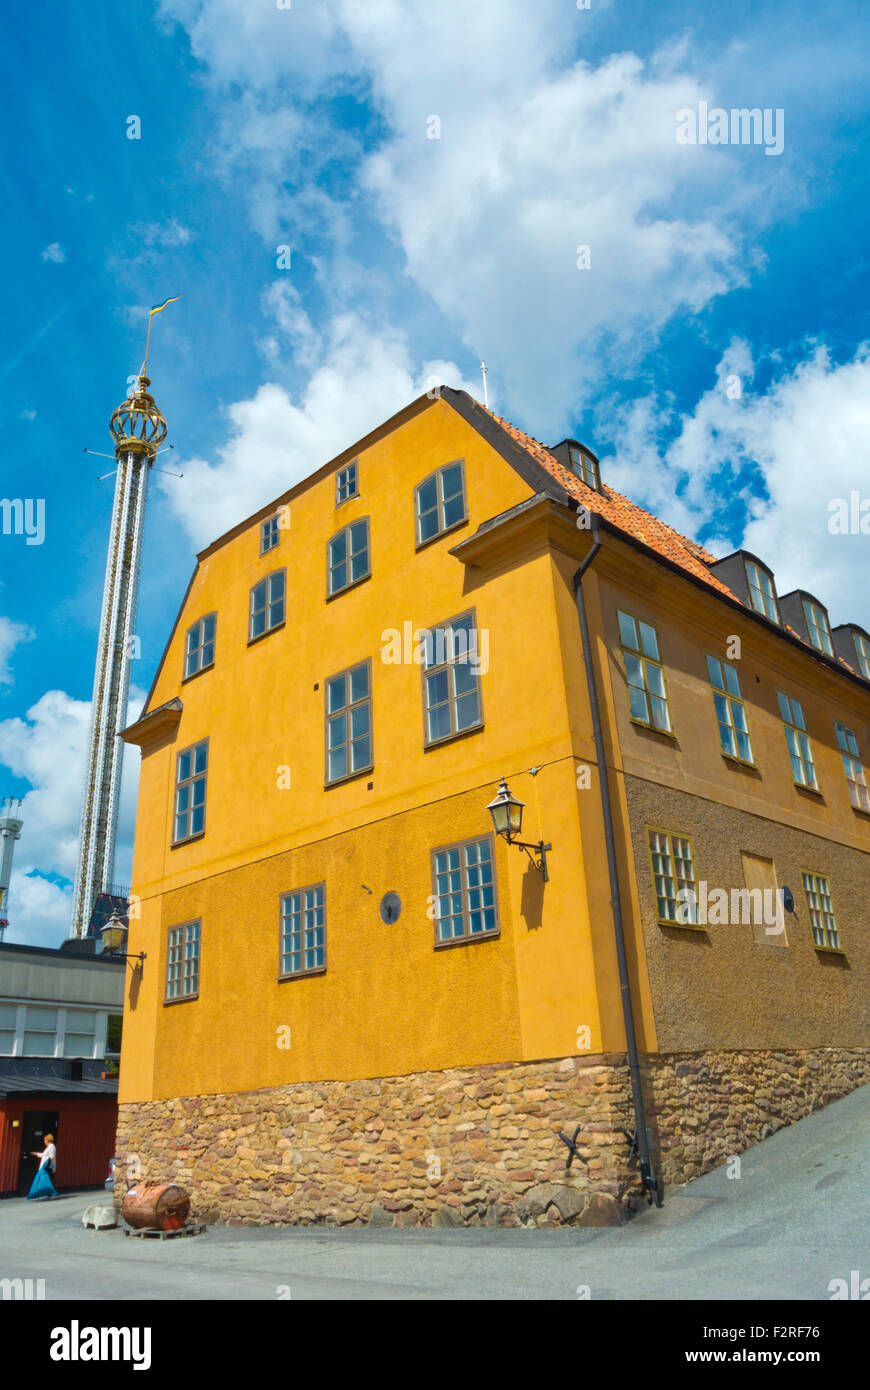 Buildings along Lilla Allmänna Gränd street, area of historical buildings, Djurgården island, Stockholm, Sweden Stock Photo